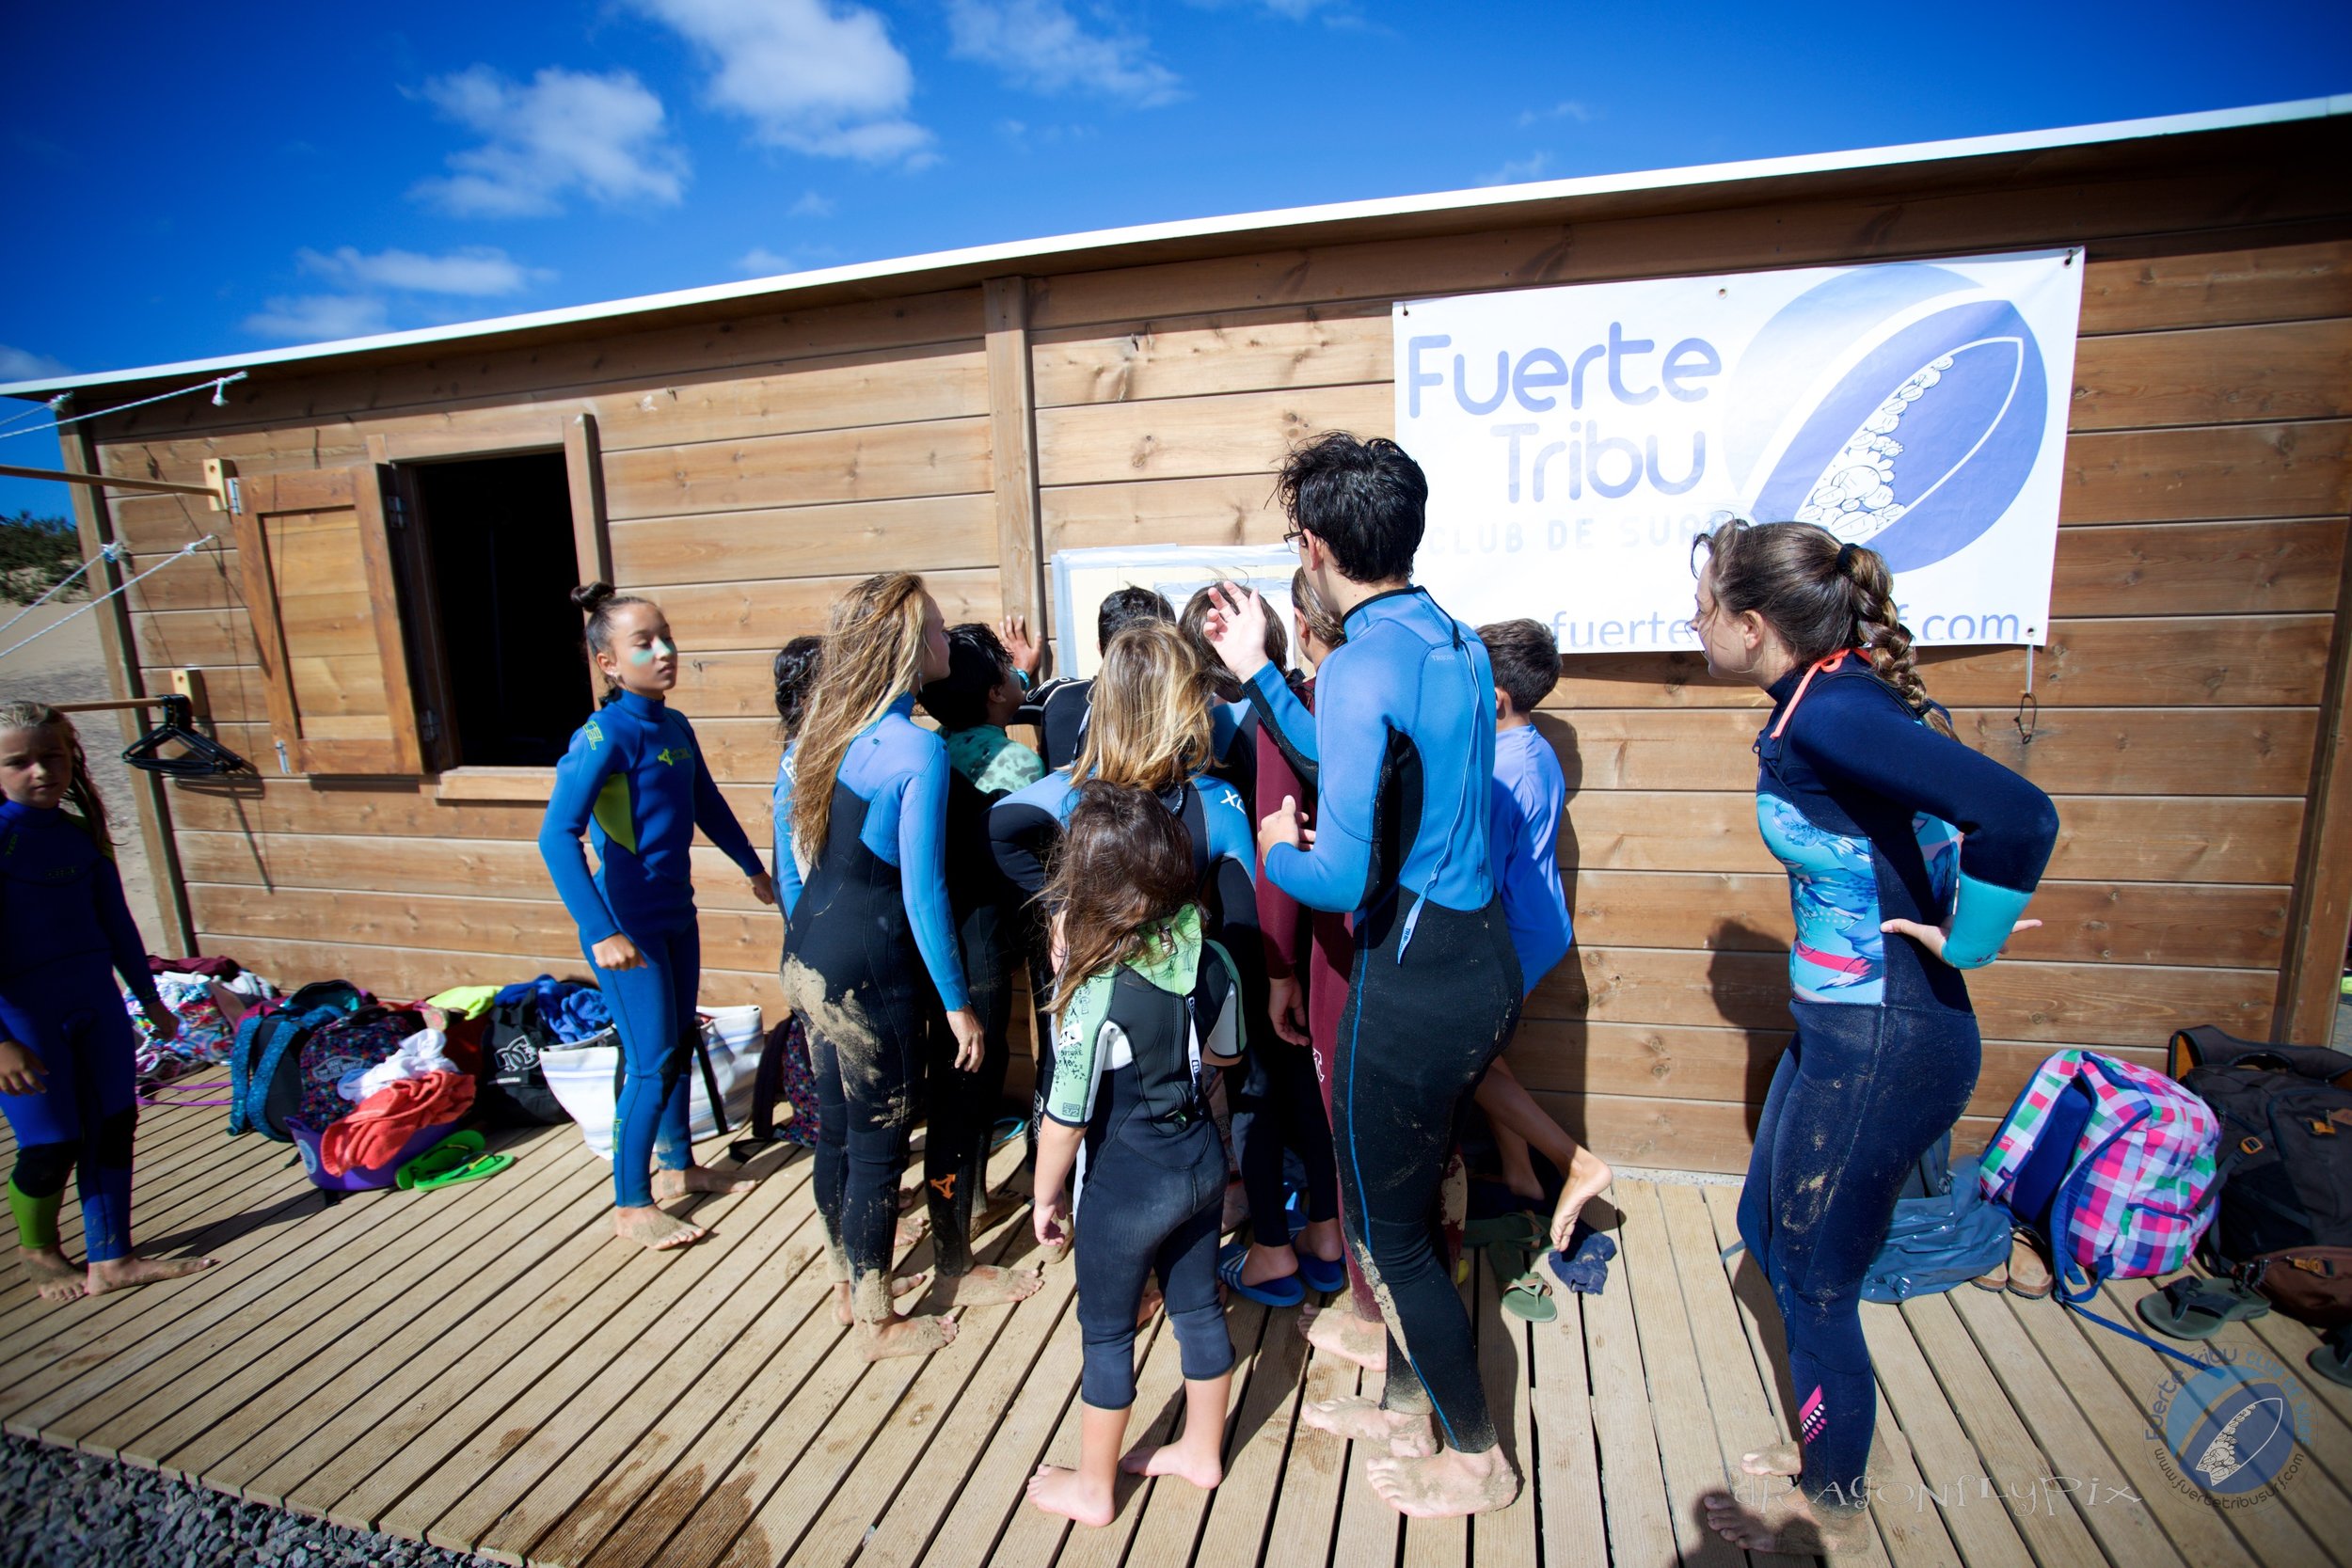 FUERTETRIBU INTRACLUB SURF CAMPEONATO KIDSIMG 0239